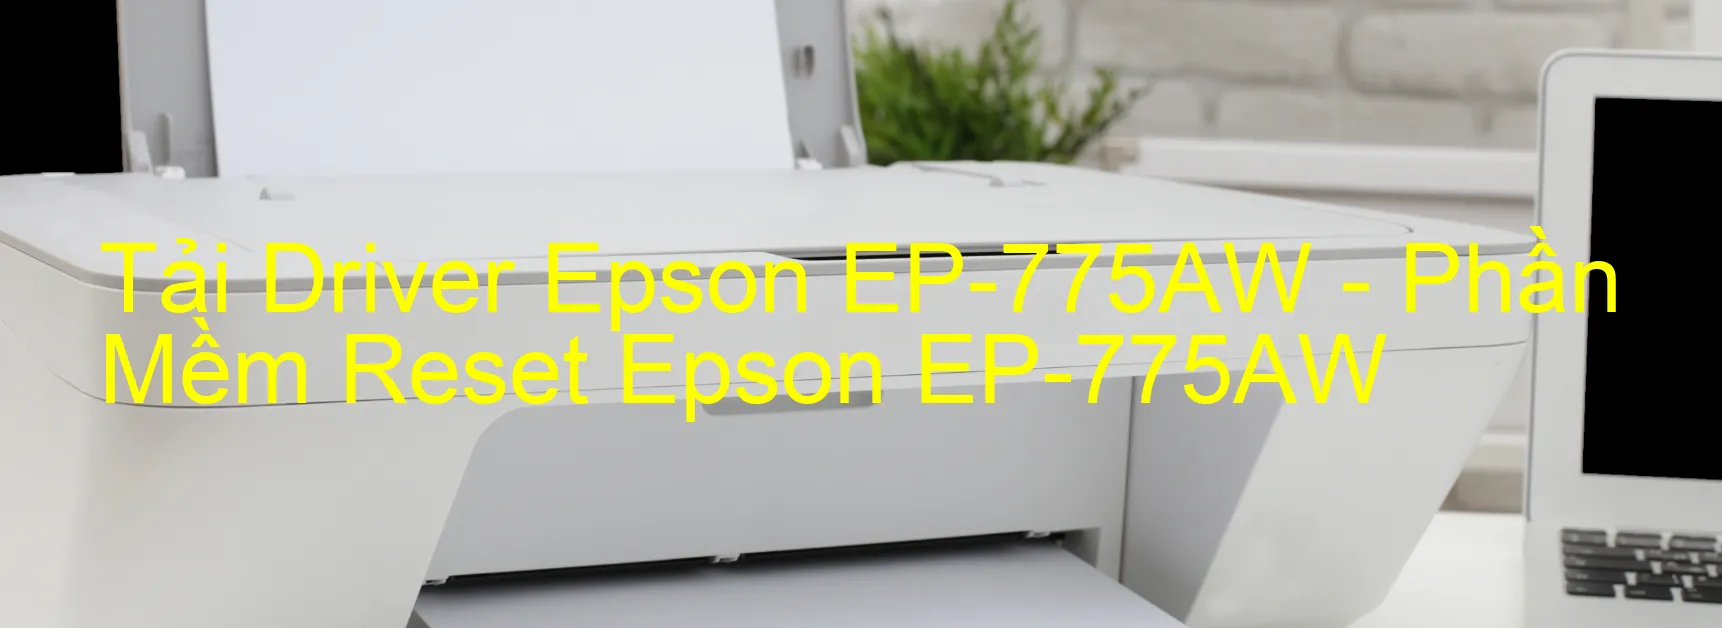 Driver Epson EP-775AW, Phần Mềm Reset Epson EP-775AW